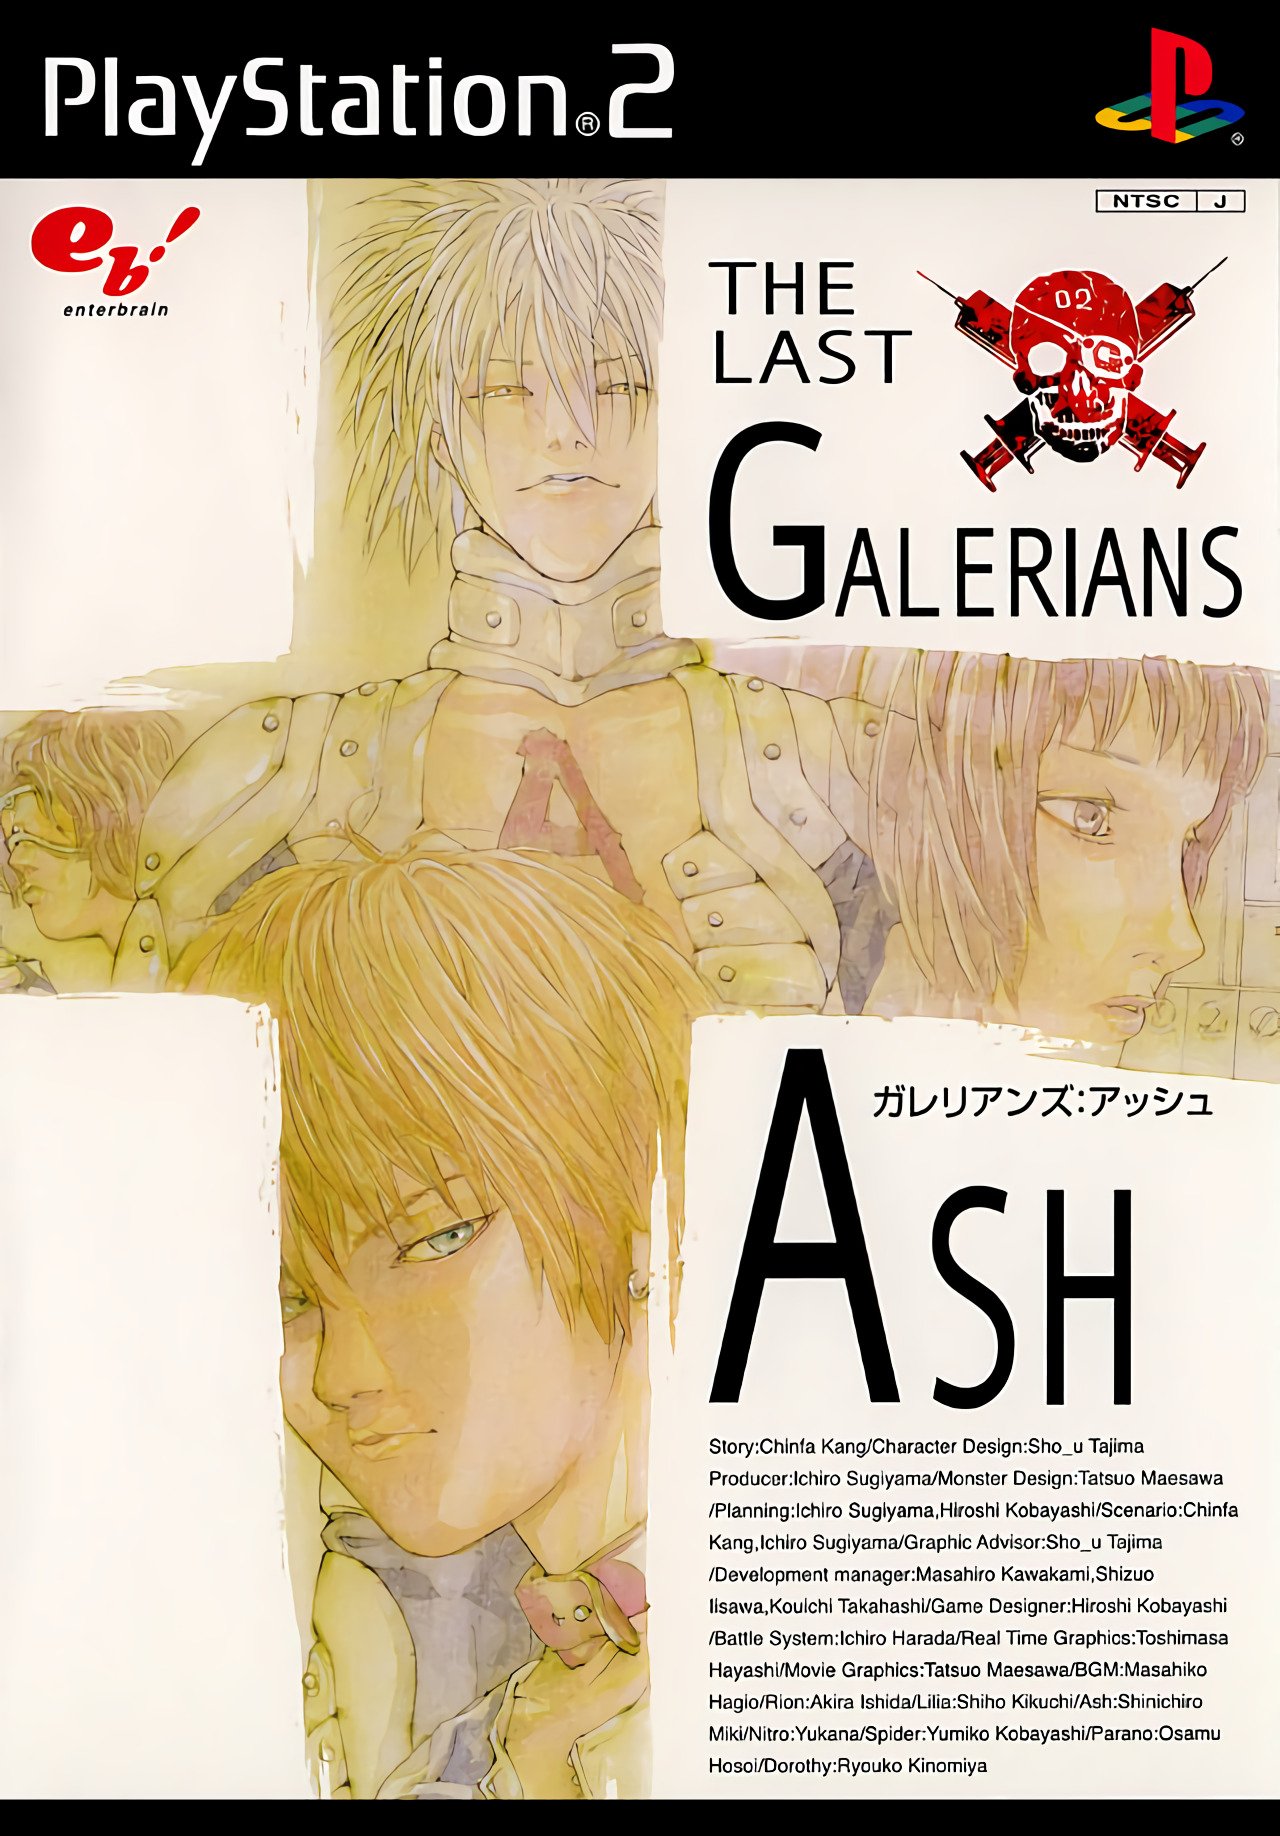 Galerians: Ash